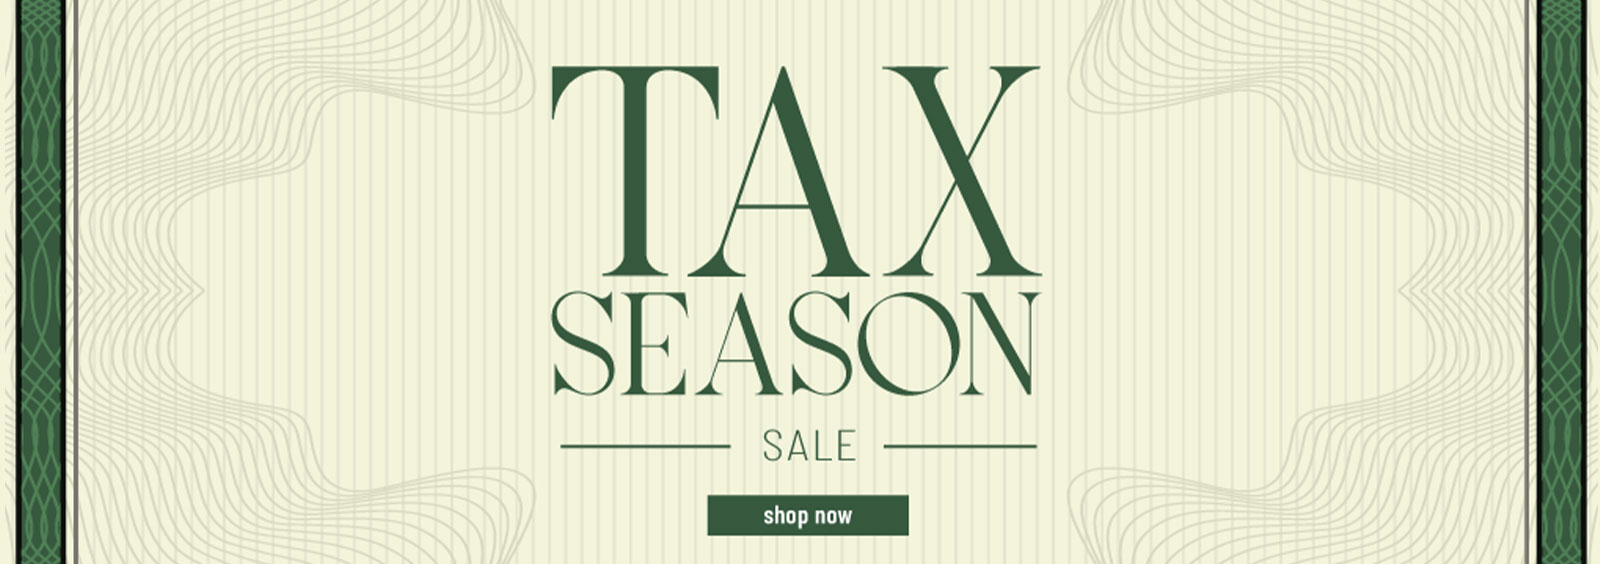 Tax Season Sale Shop Now